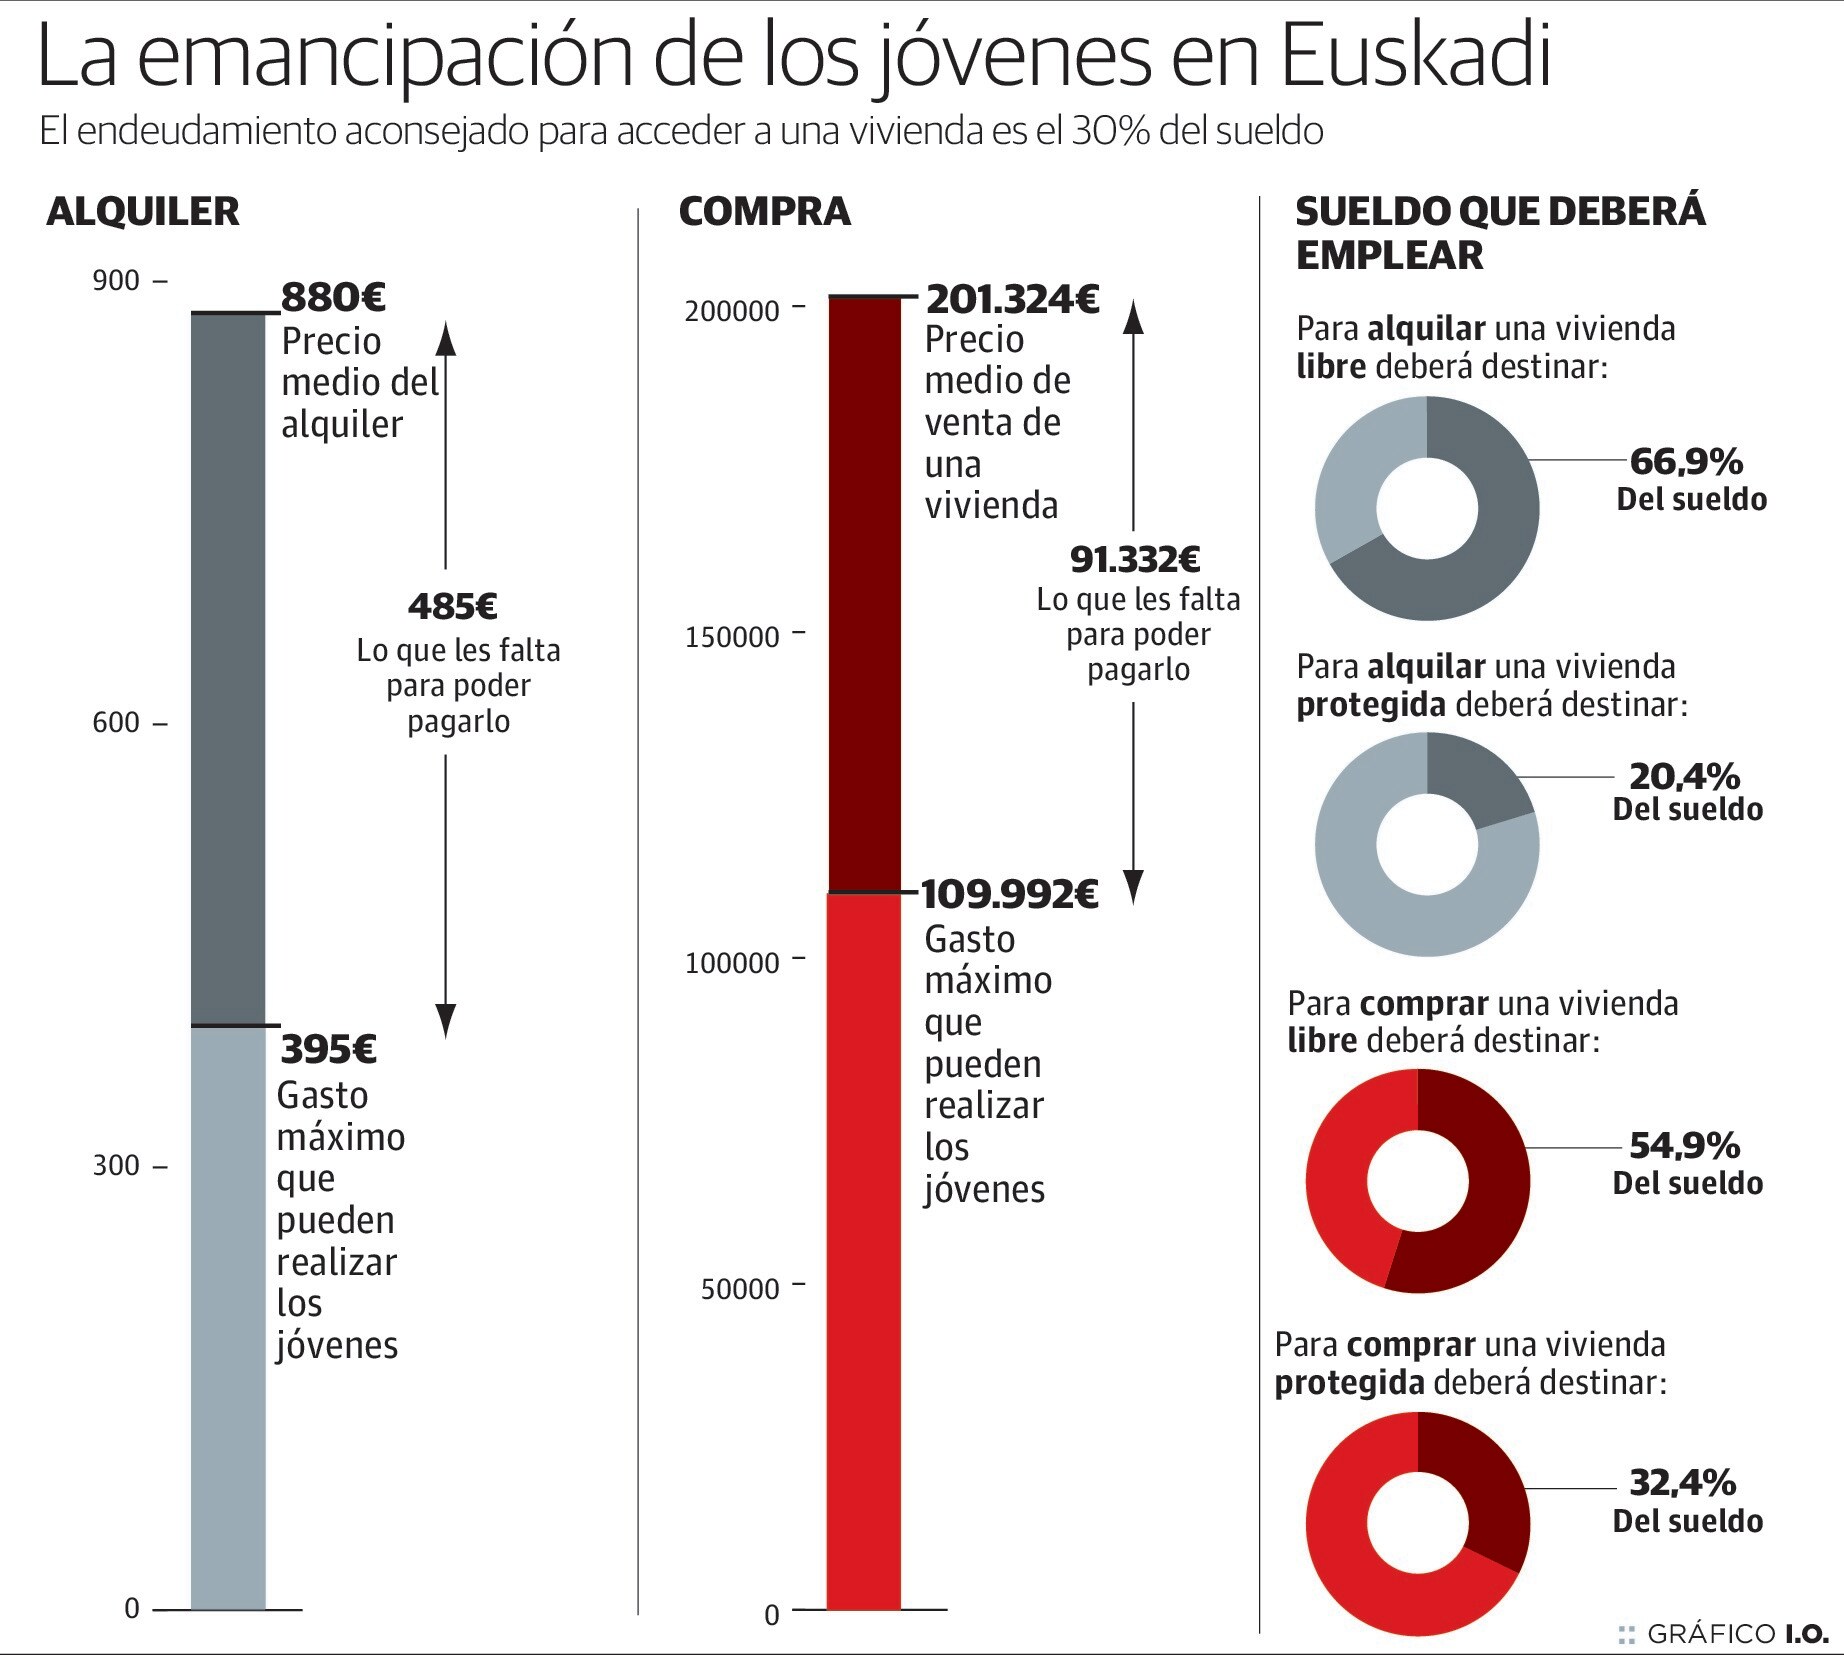 La emancipación de los jóvenes en Euskadi